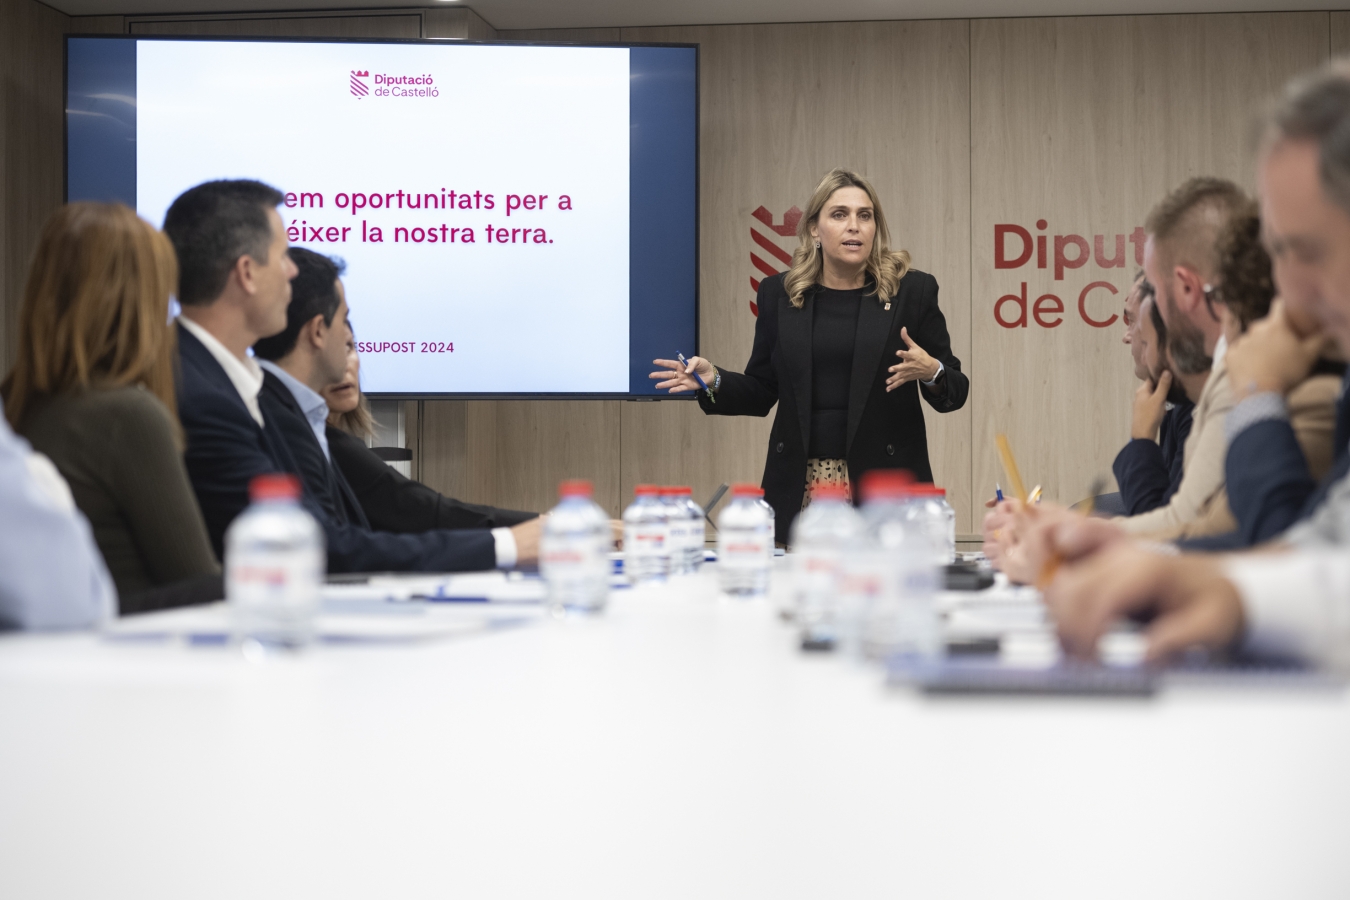 Marta Barrachina solicita una reunión con la ministra y exige al Gobierno soluciones “urgentes” para proteger el litoral de la provincia de Castellón